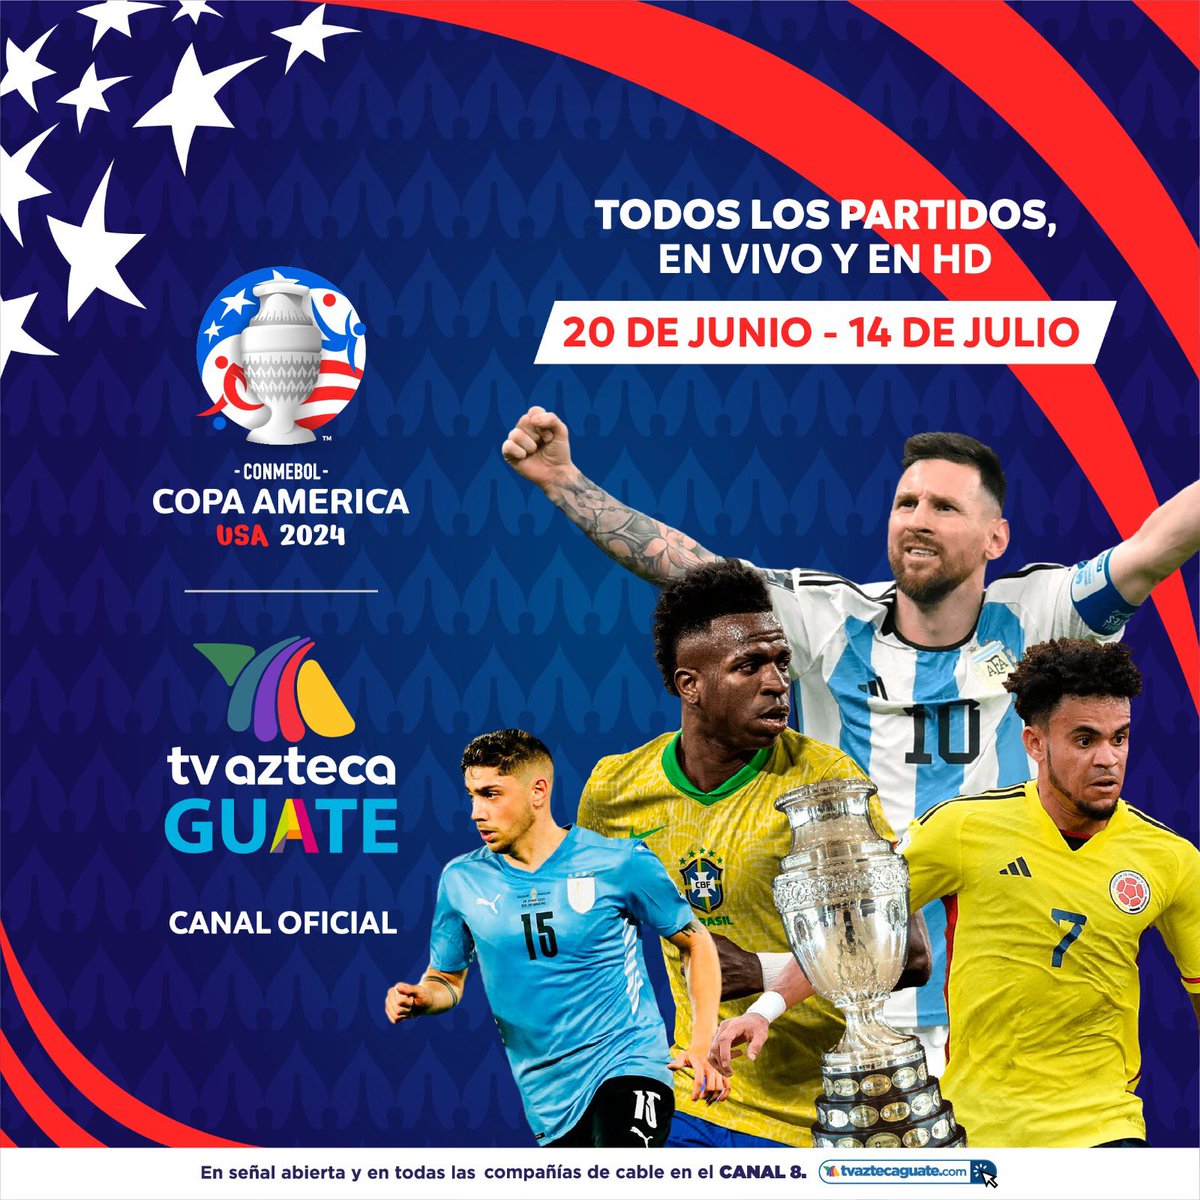 ⚽️🏆Copa América, en exclusiva por señal abierta para toda Guatemala 🇬🇹 por TV Azteca Guate! Todos los partidos desde el 20 de Junio al 14 de Julio y en HD! 🇨🇴🇧🇴🇧🇷🇦🇷🇻🇪🇨🇱🇵🇪🇺🇾🇵🇾🇪🇨🇺🇸🇲🇽🇨🇷🇵🇦🇨🇦🇯🇲
#TVAztecaGuate #ElMejorCanal